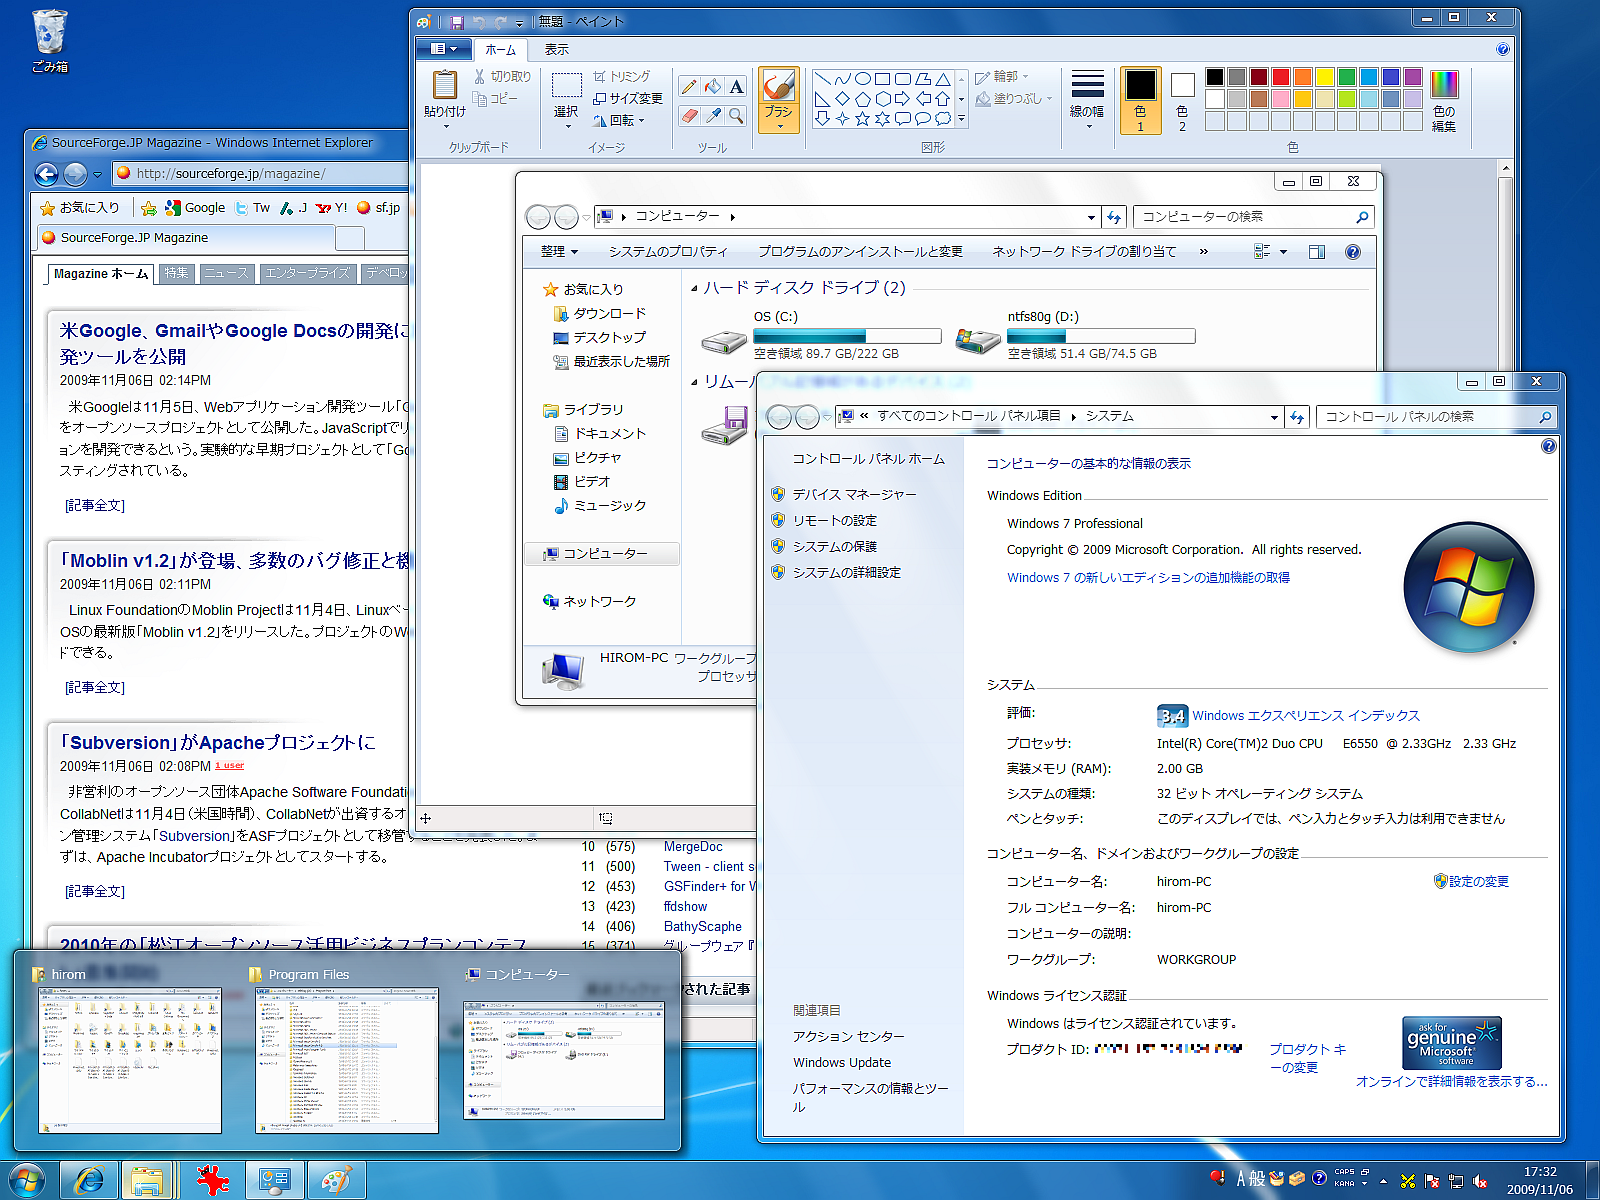 Windows 7に完全対応したインテル コンパイラー 11 1 1 4 Hpc 並列プログラミングポータル Osdn